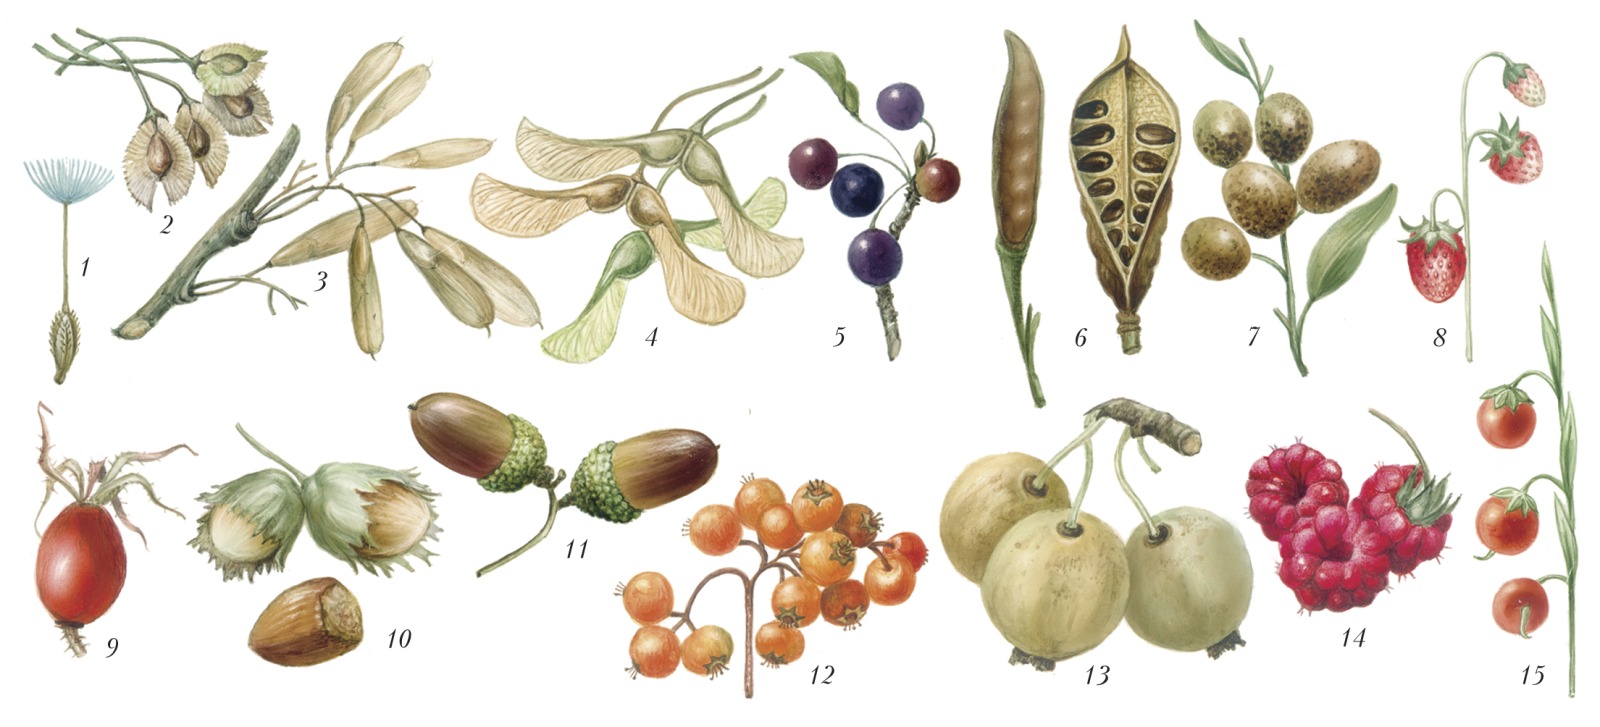 растения и плоды картинки